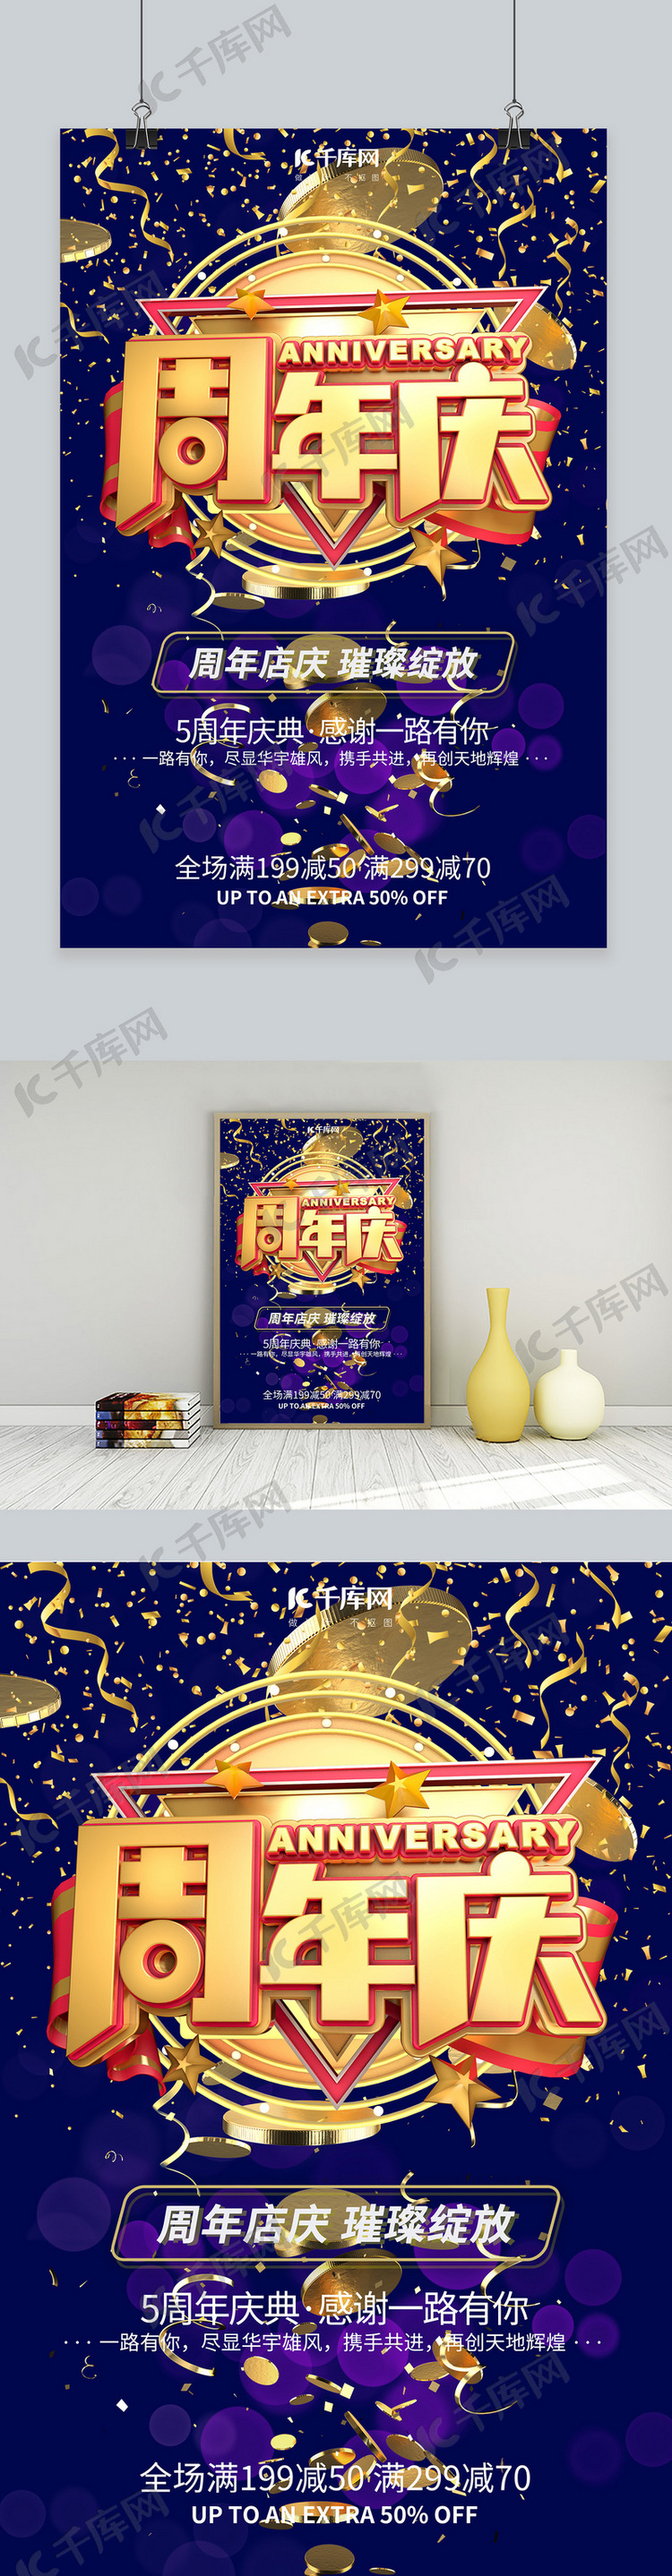 周年庆炫酷创意电商海报